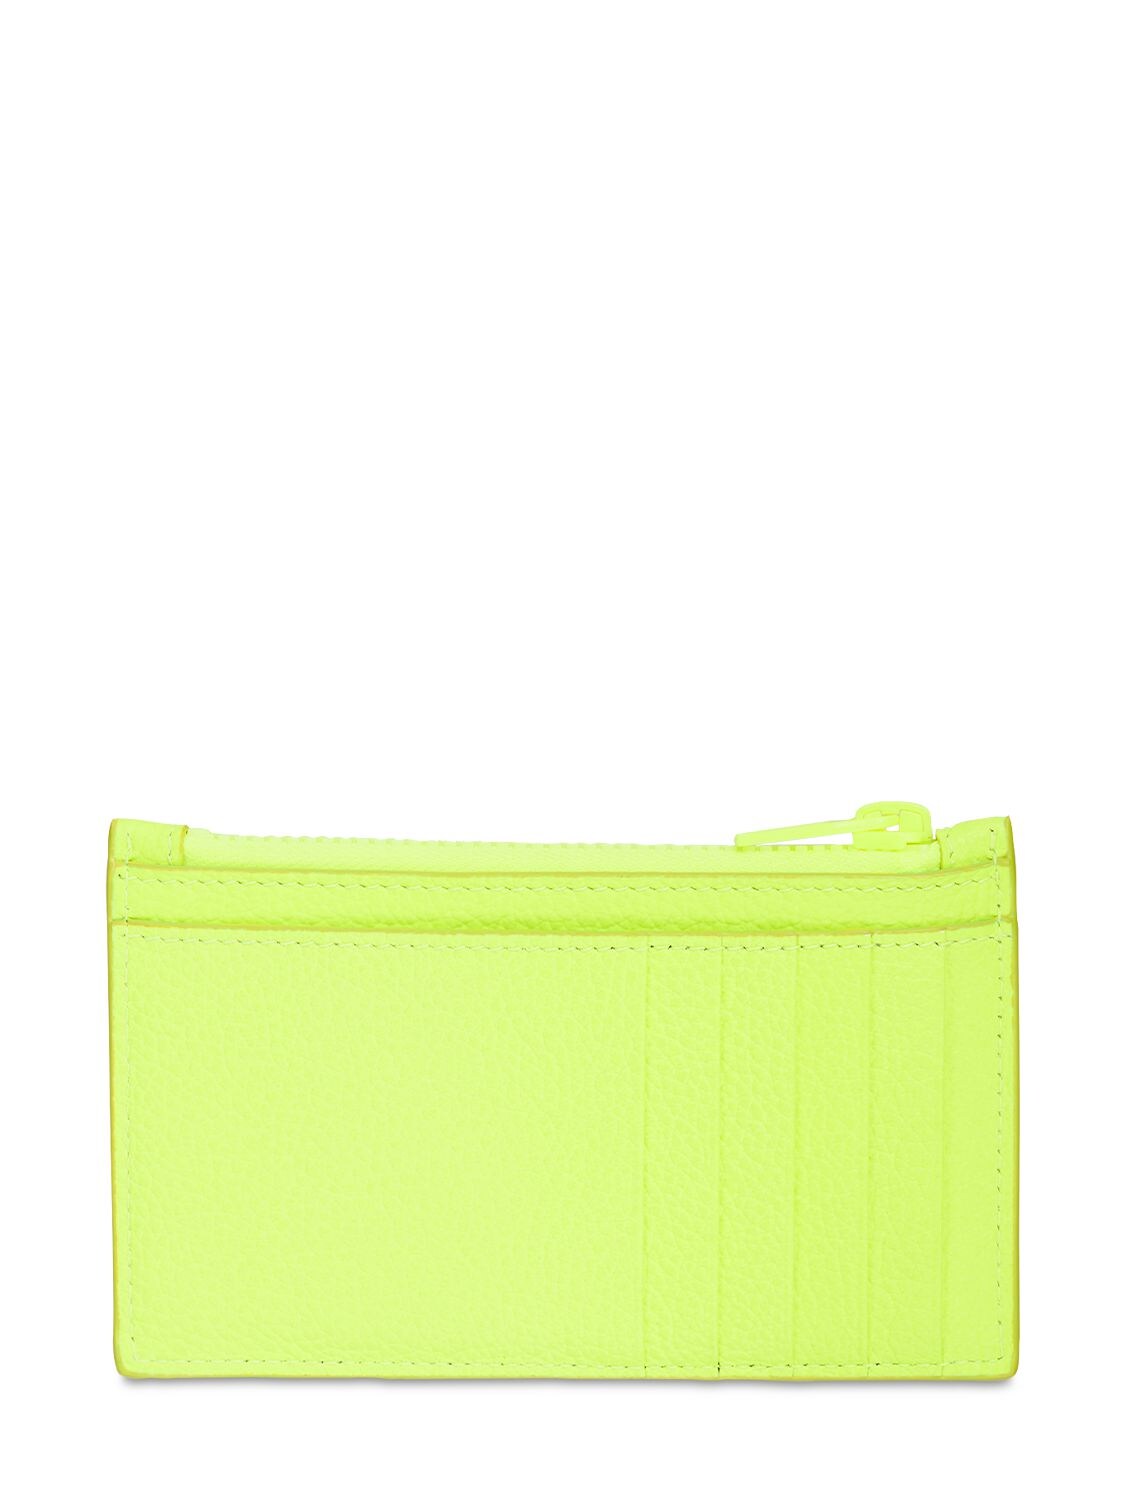 Shop Balenciaga Leather Coin & Card Holder In Neon Yellow